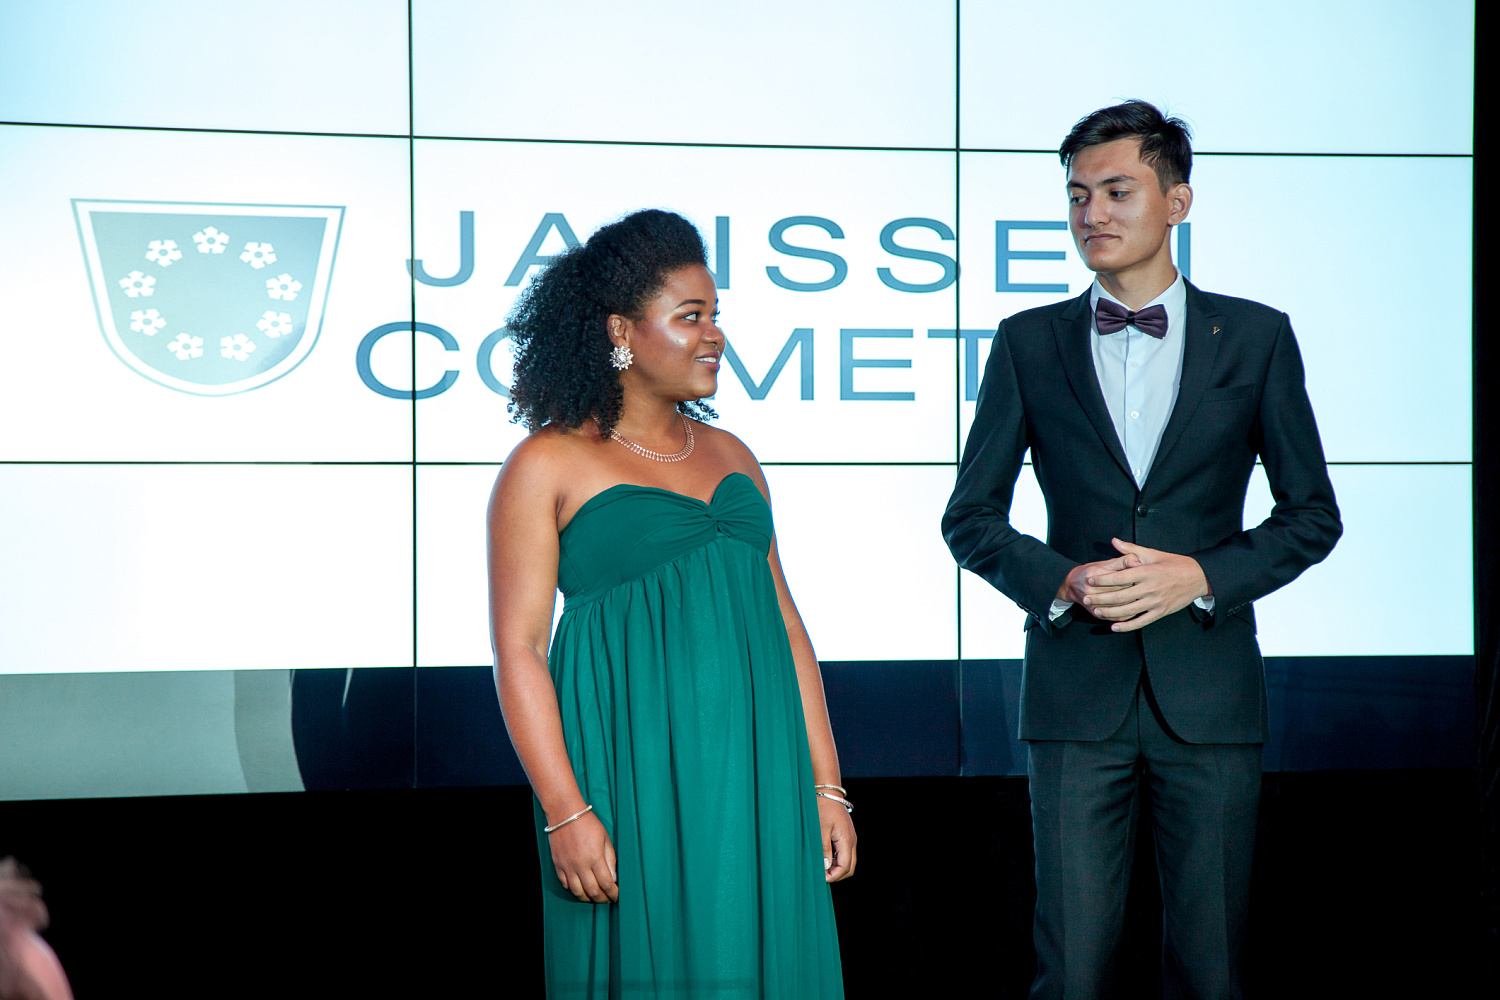 Ежегодная презентация Janssen Cosmetics в отеле Ararat Part Hyatt 2018